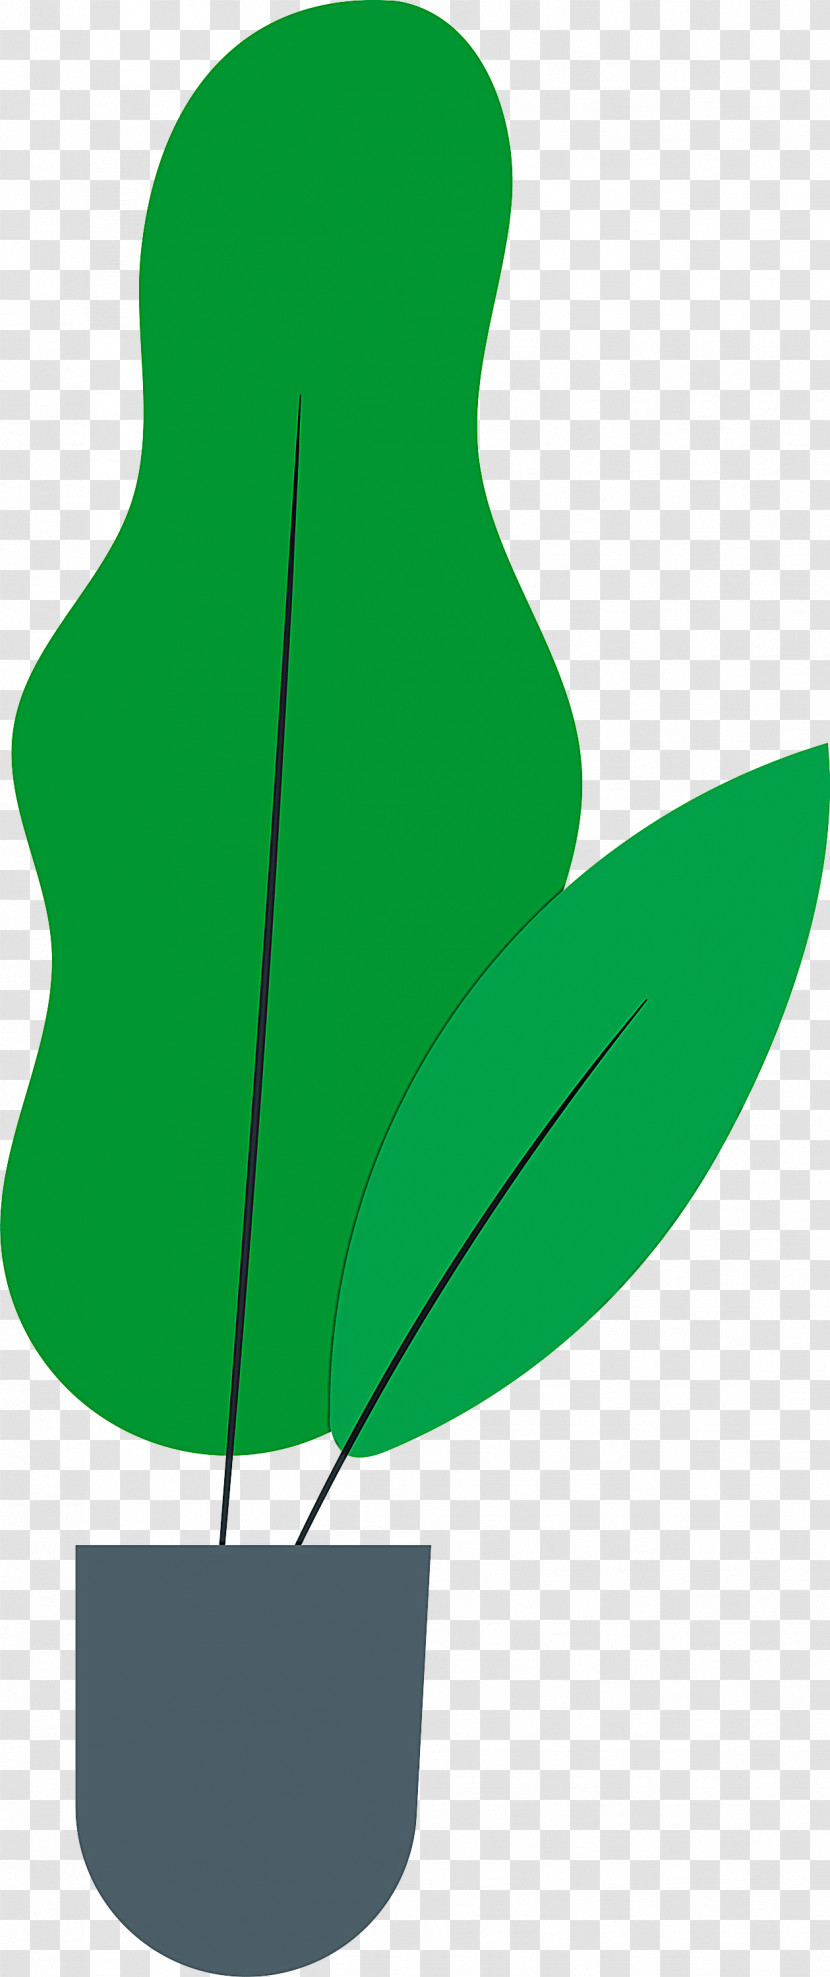 Leaf Plant Stem Flower Branch Petal Transparent PNG